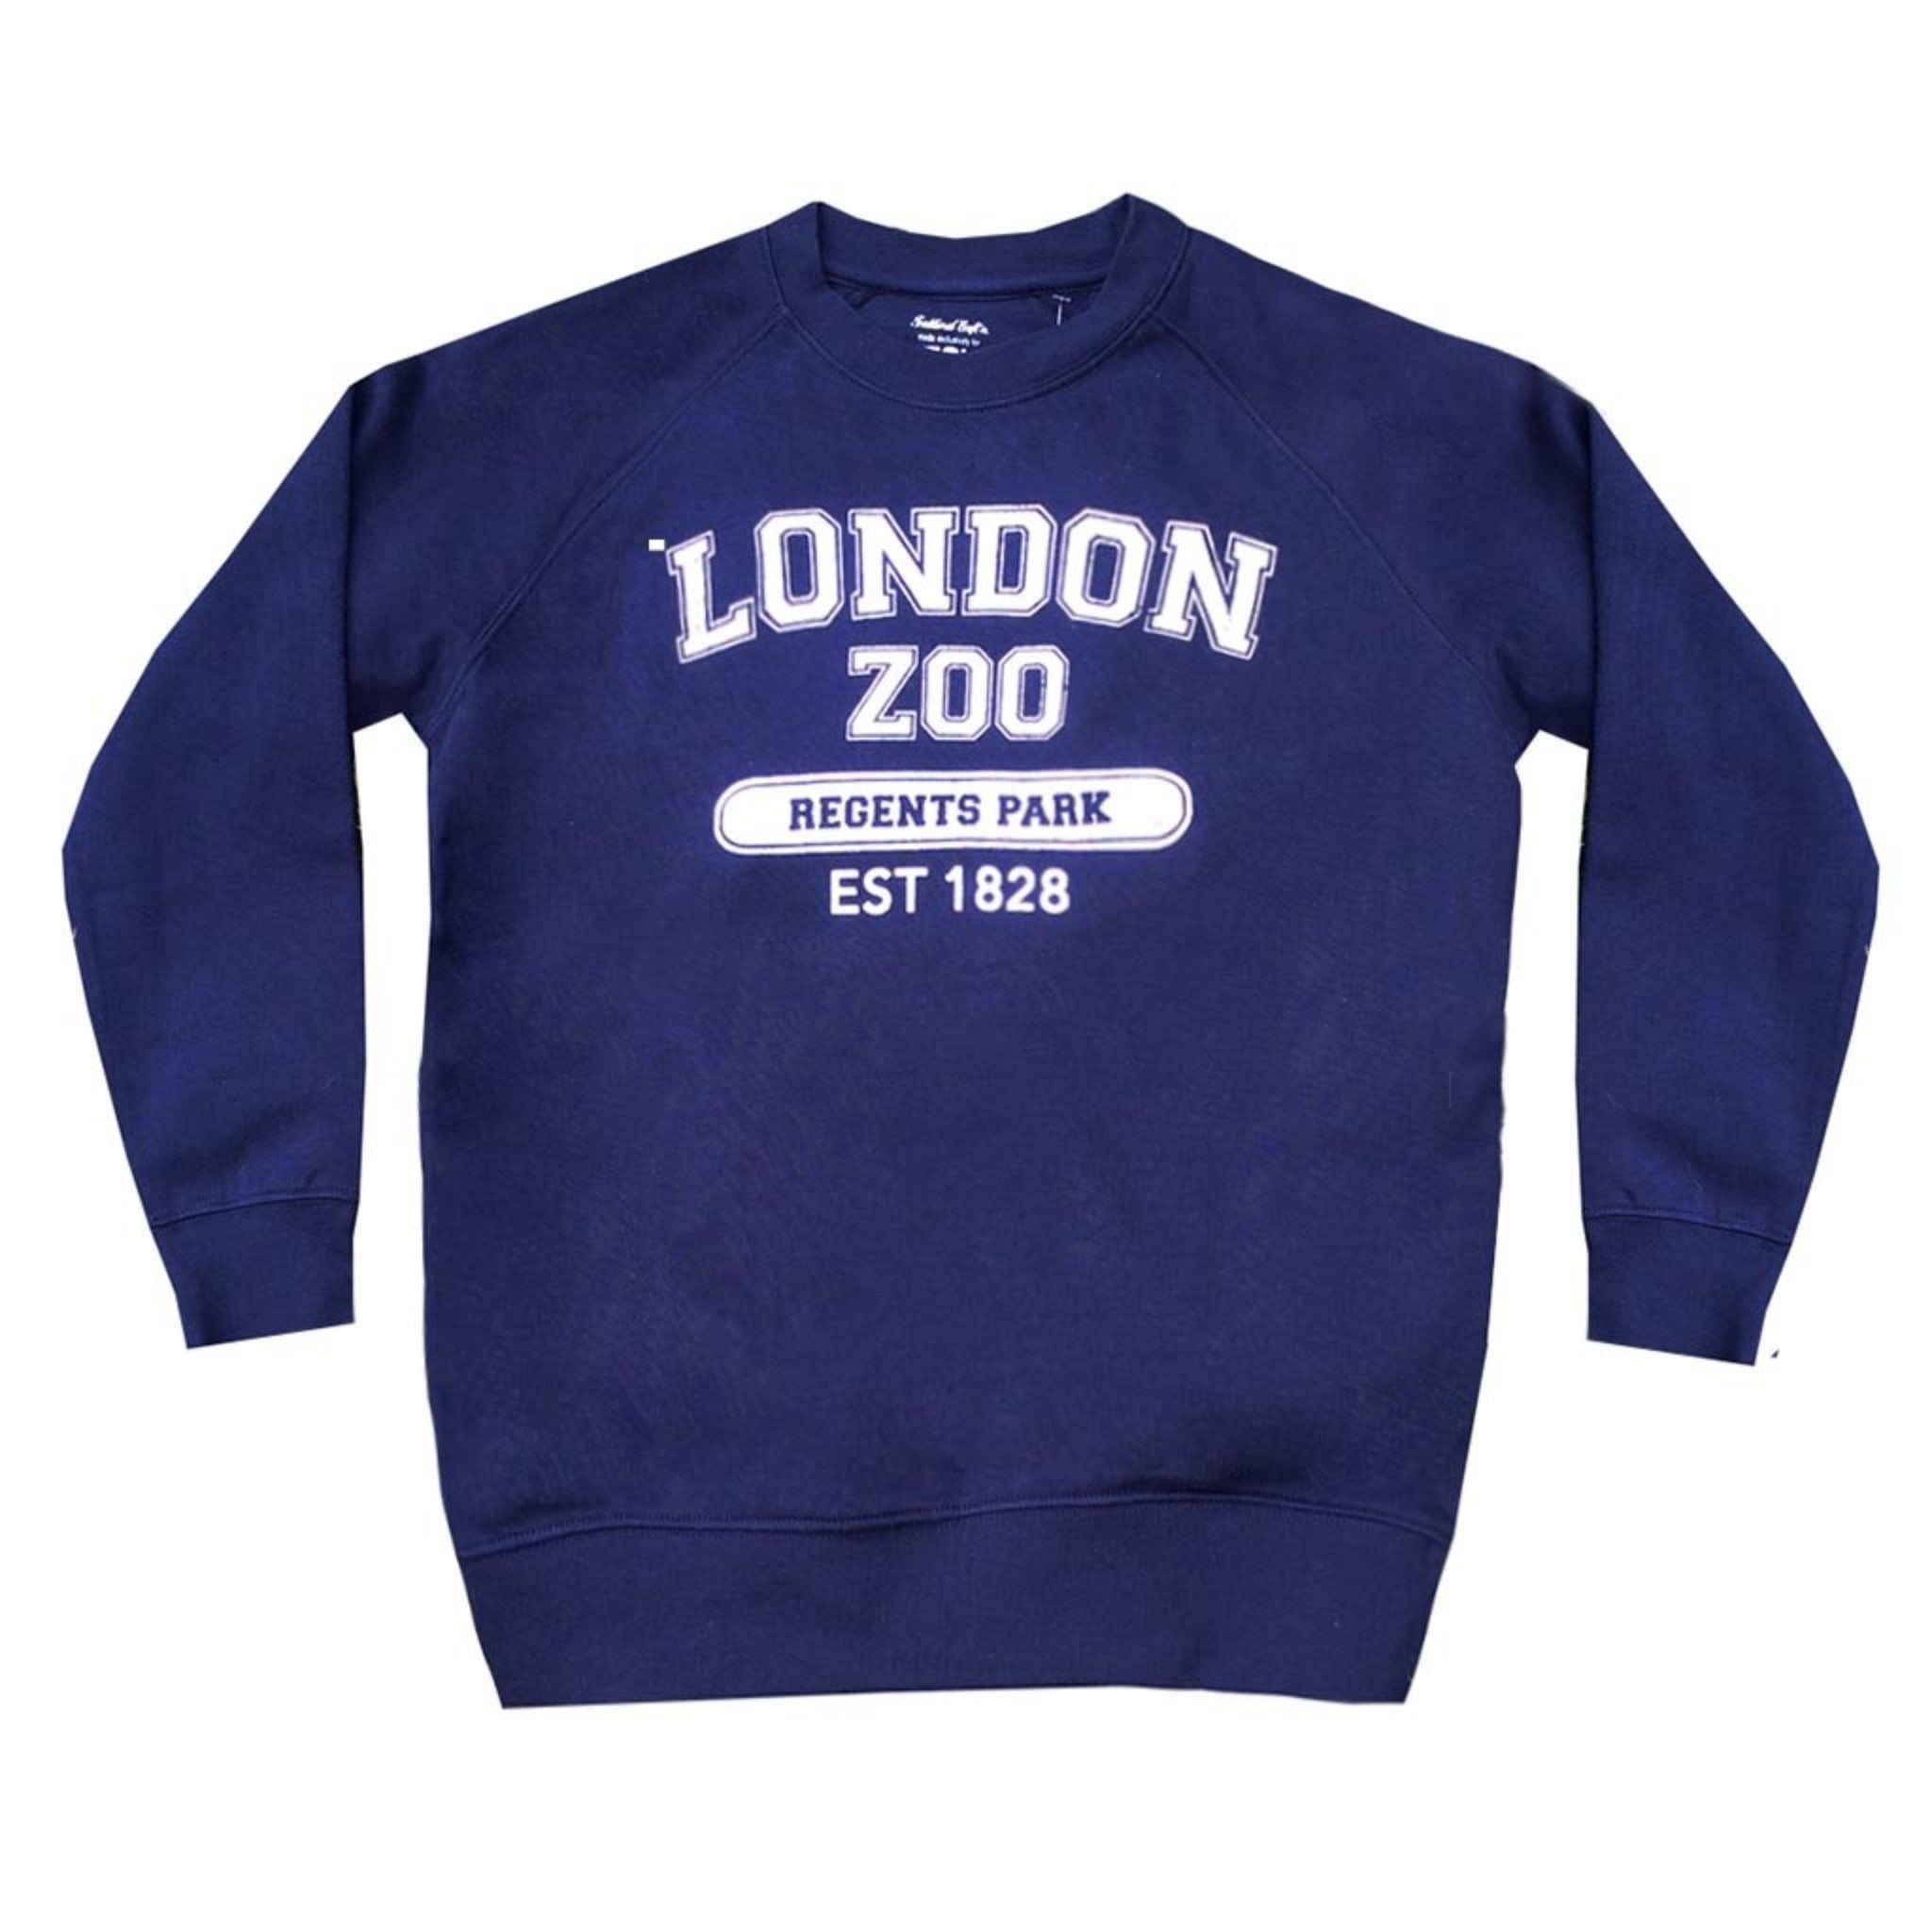 Adult's London Zoo Sweatshirt